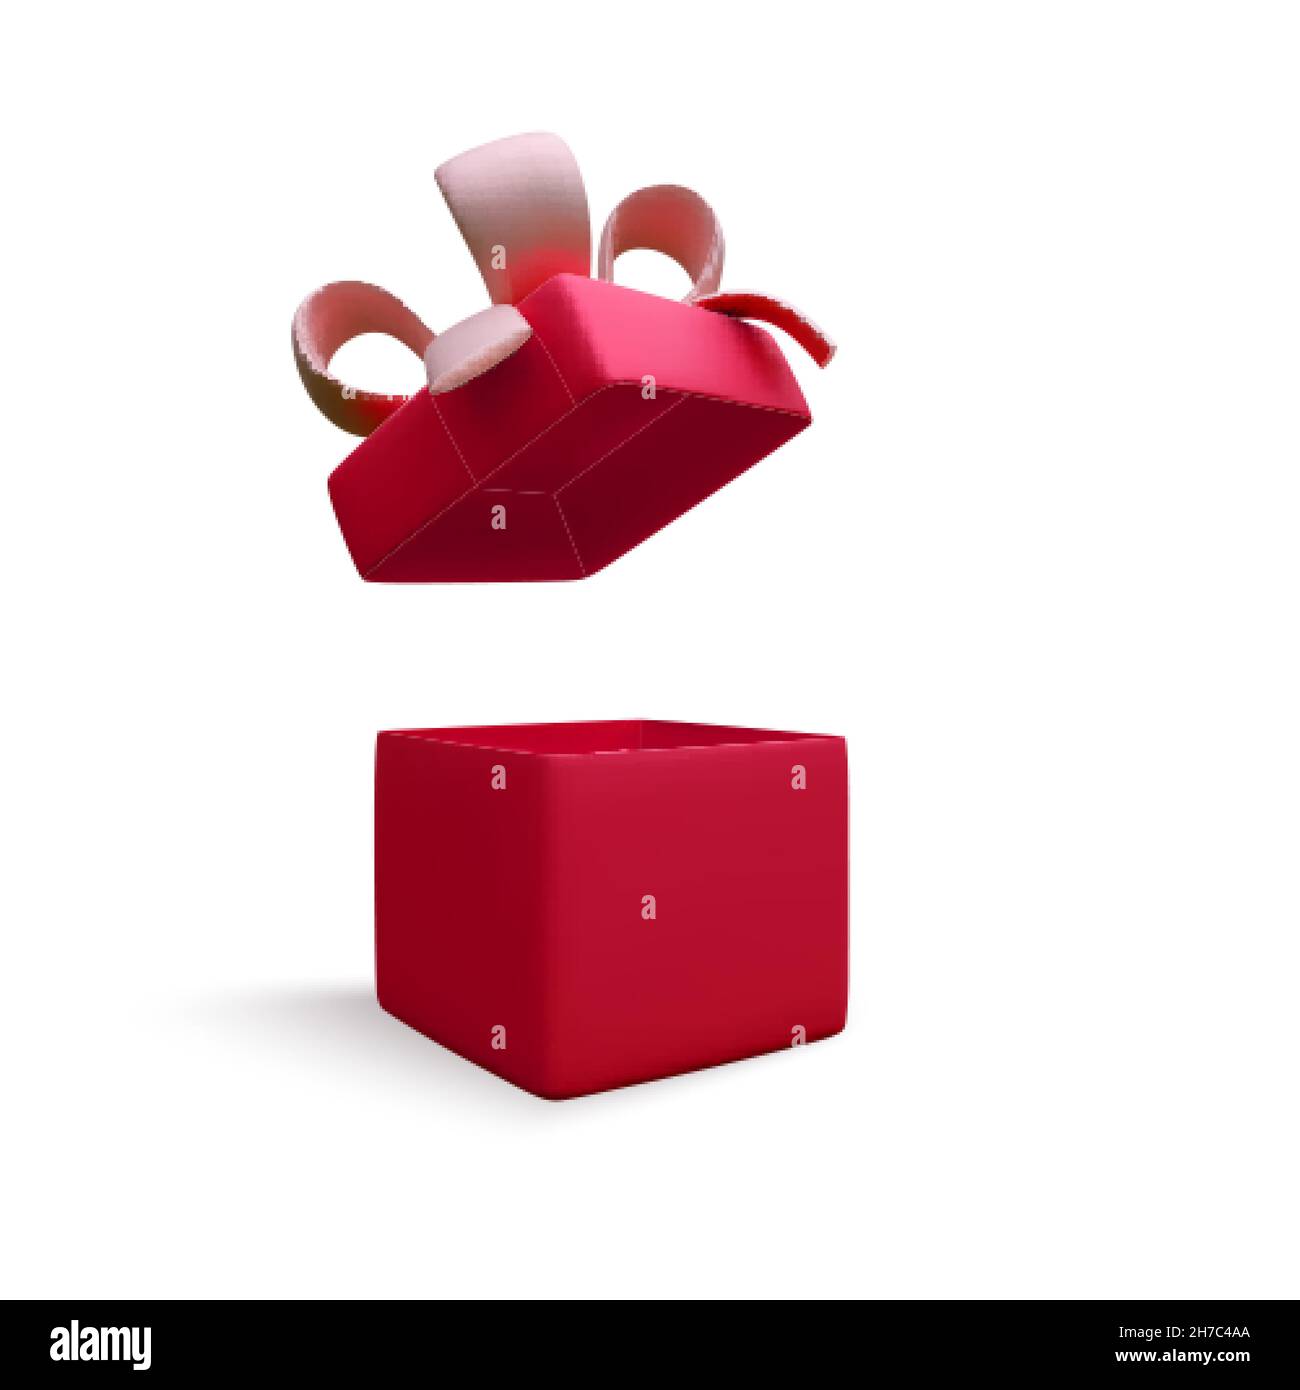 3D offene rote Geschenkbox. Rote realistische Geschenk- oder Überraschungskiste. Vektorgrafik Stock Vektor